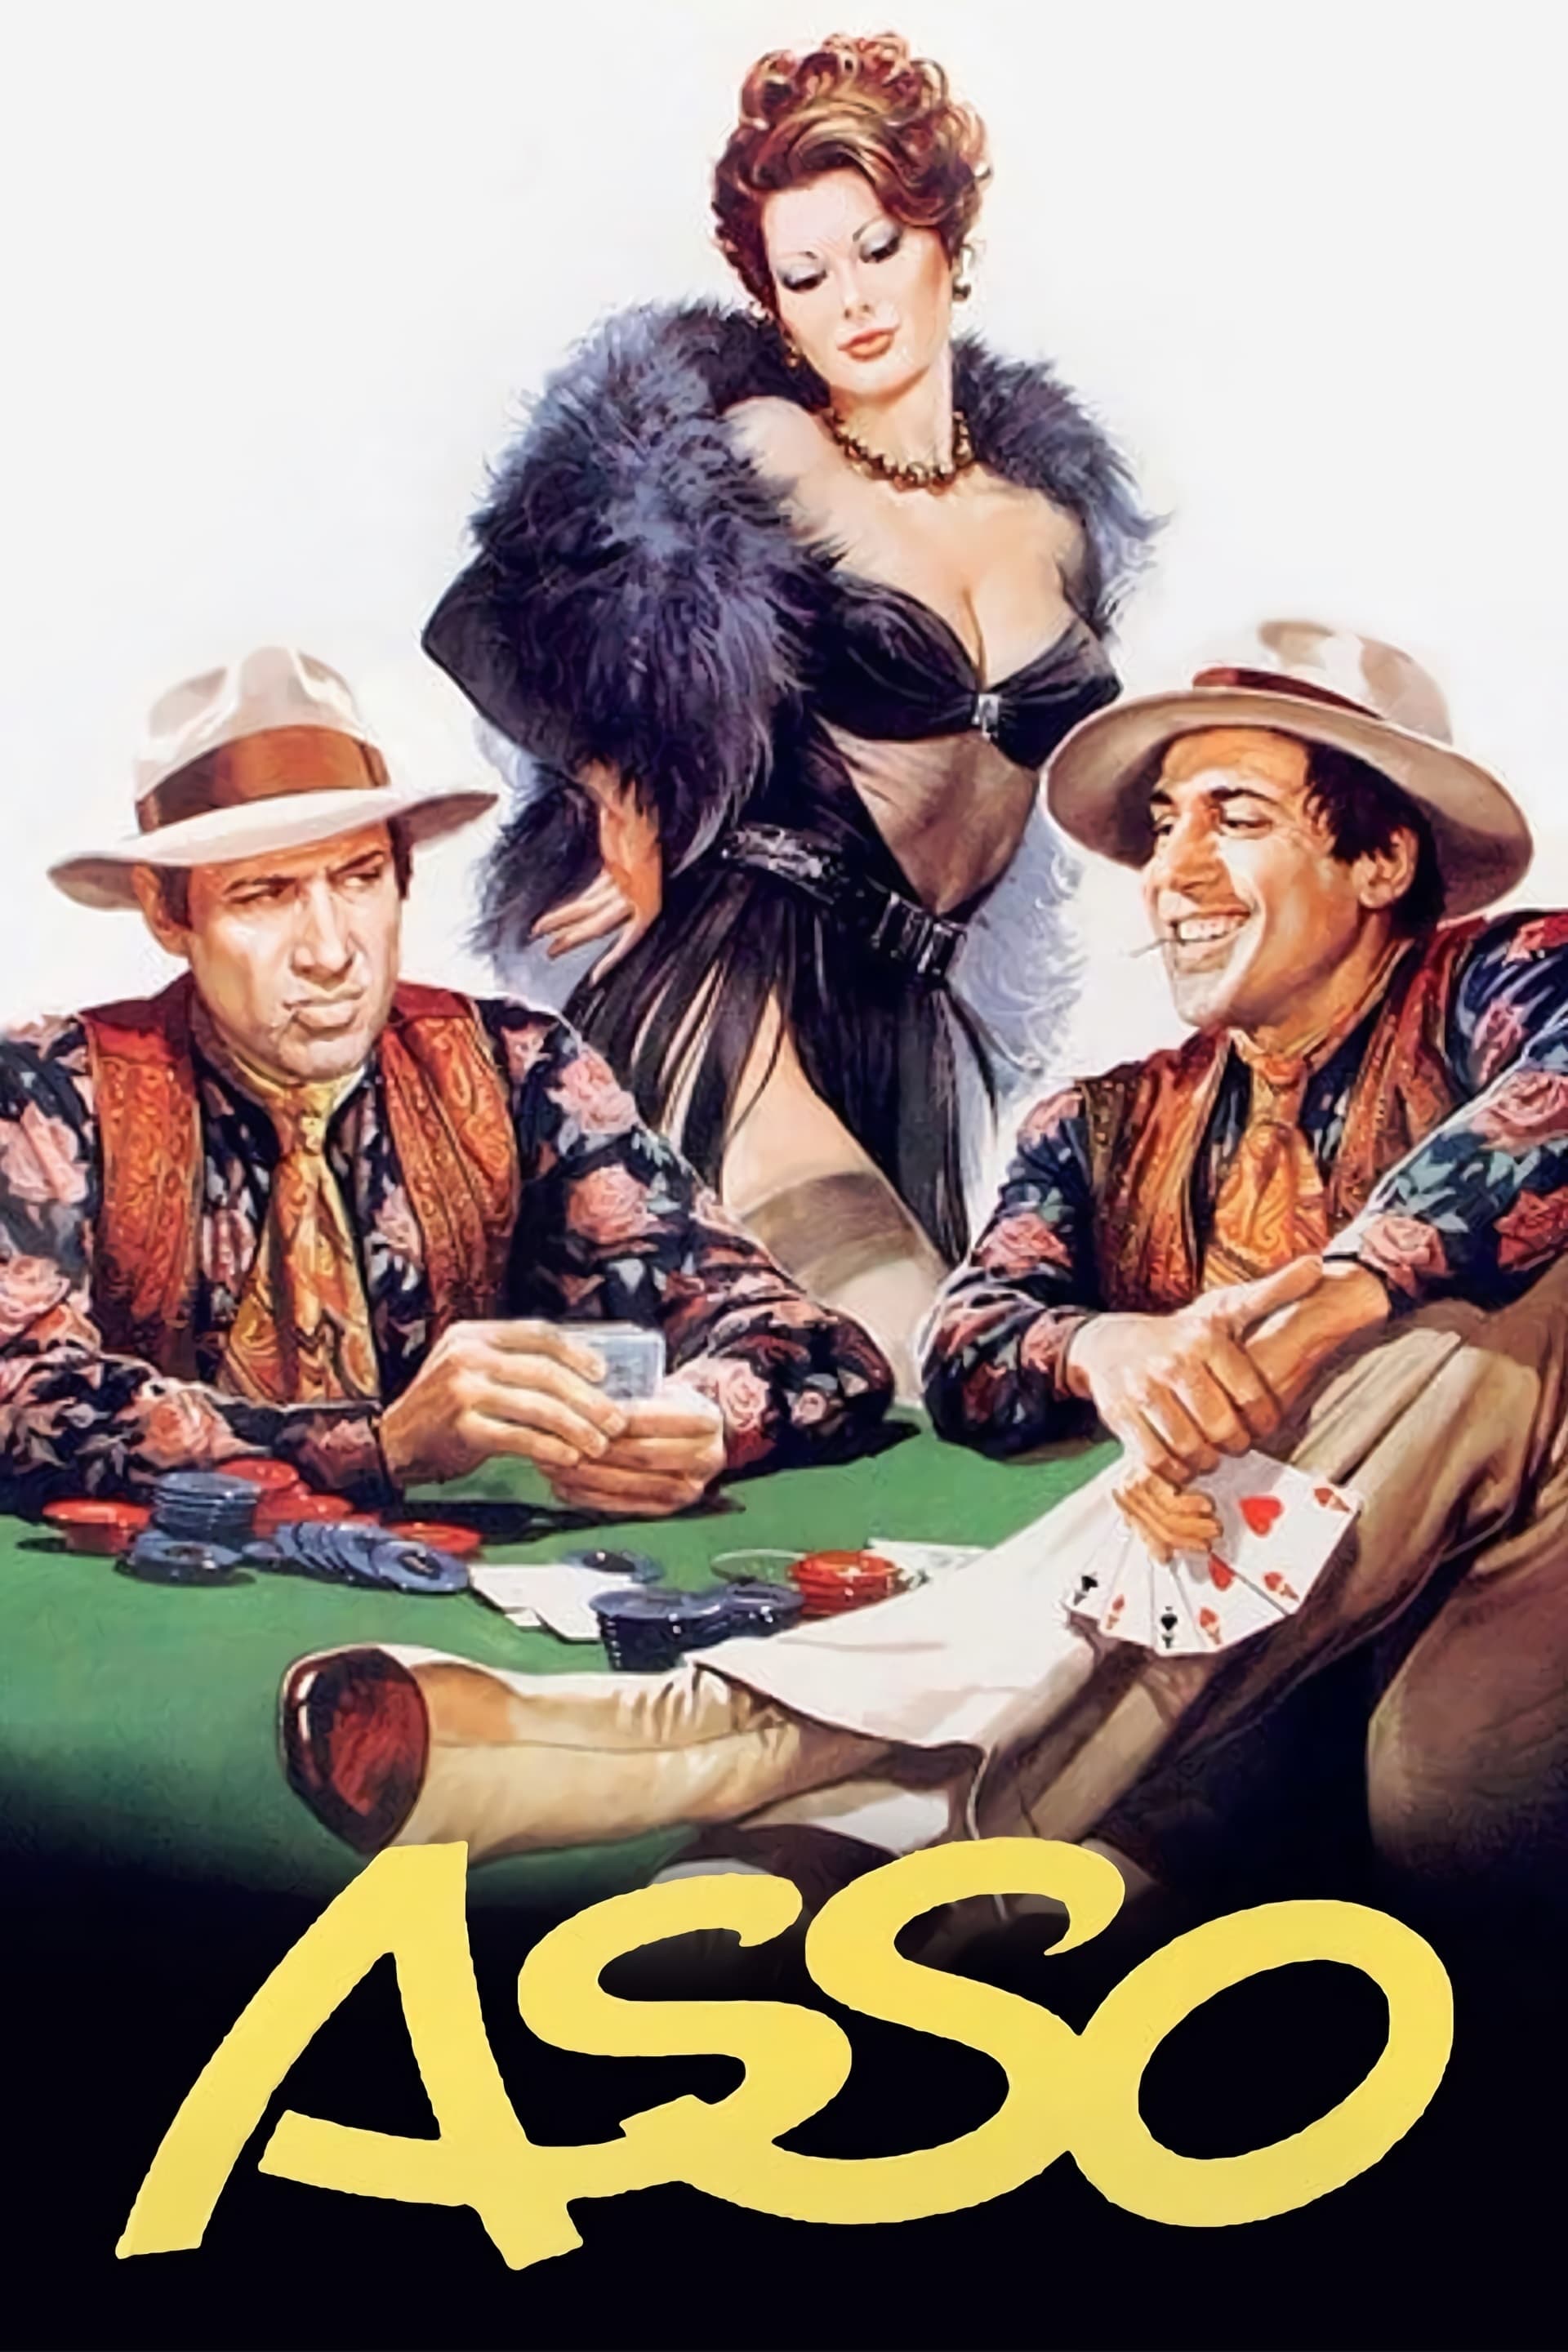 El as (1981)